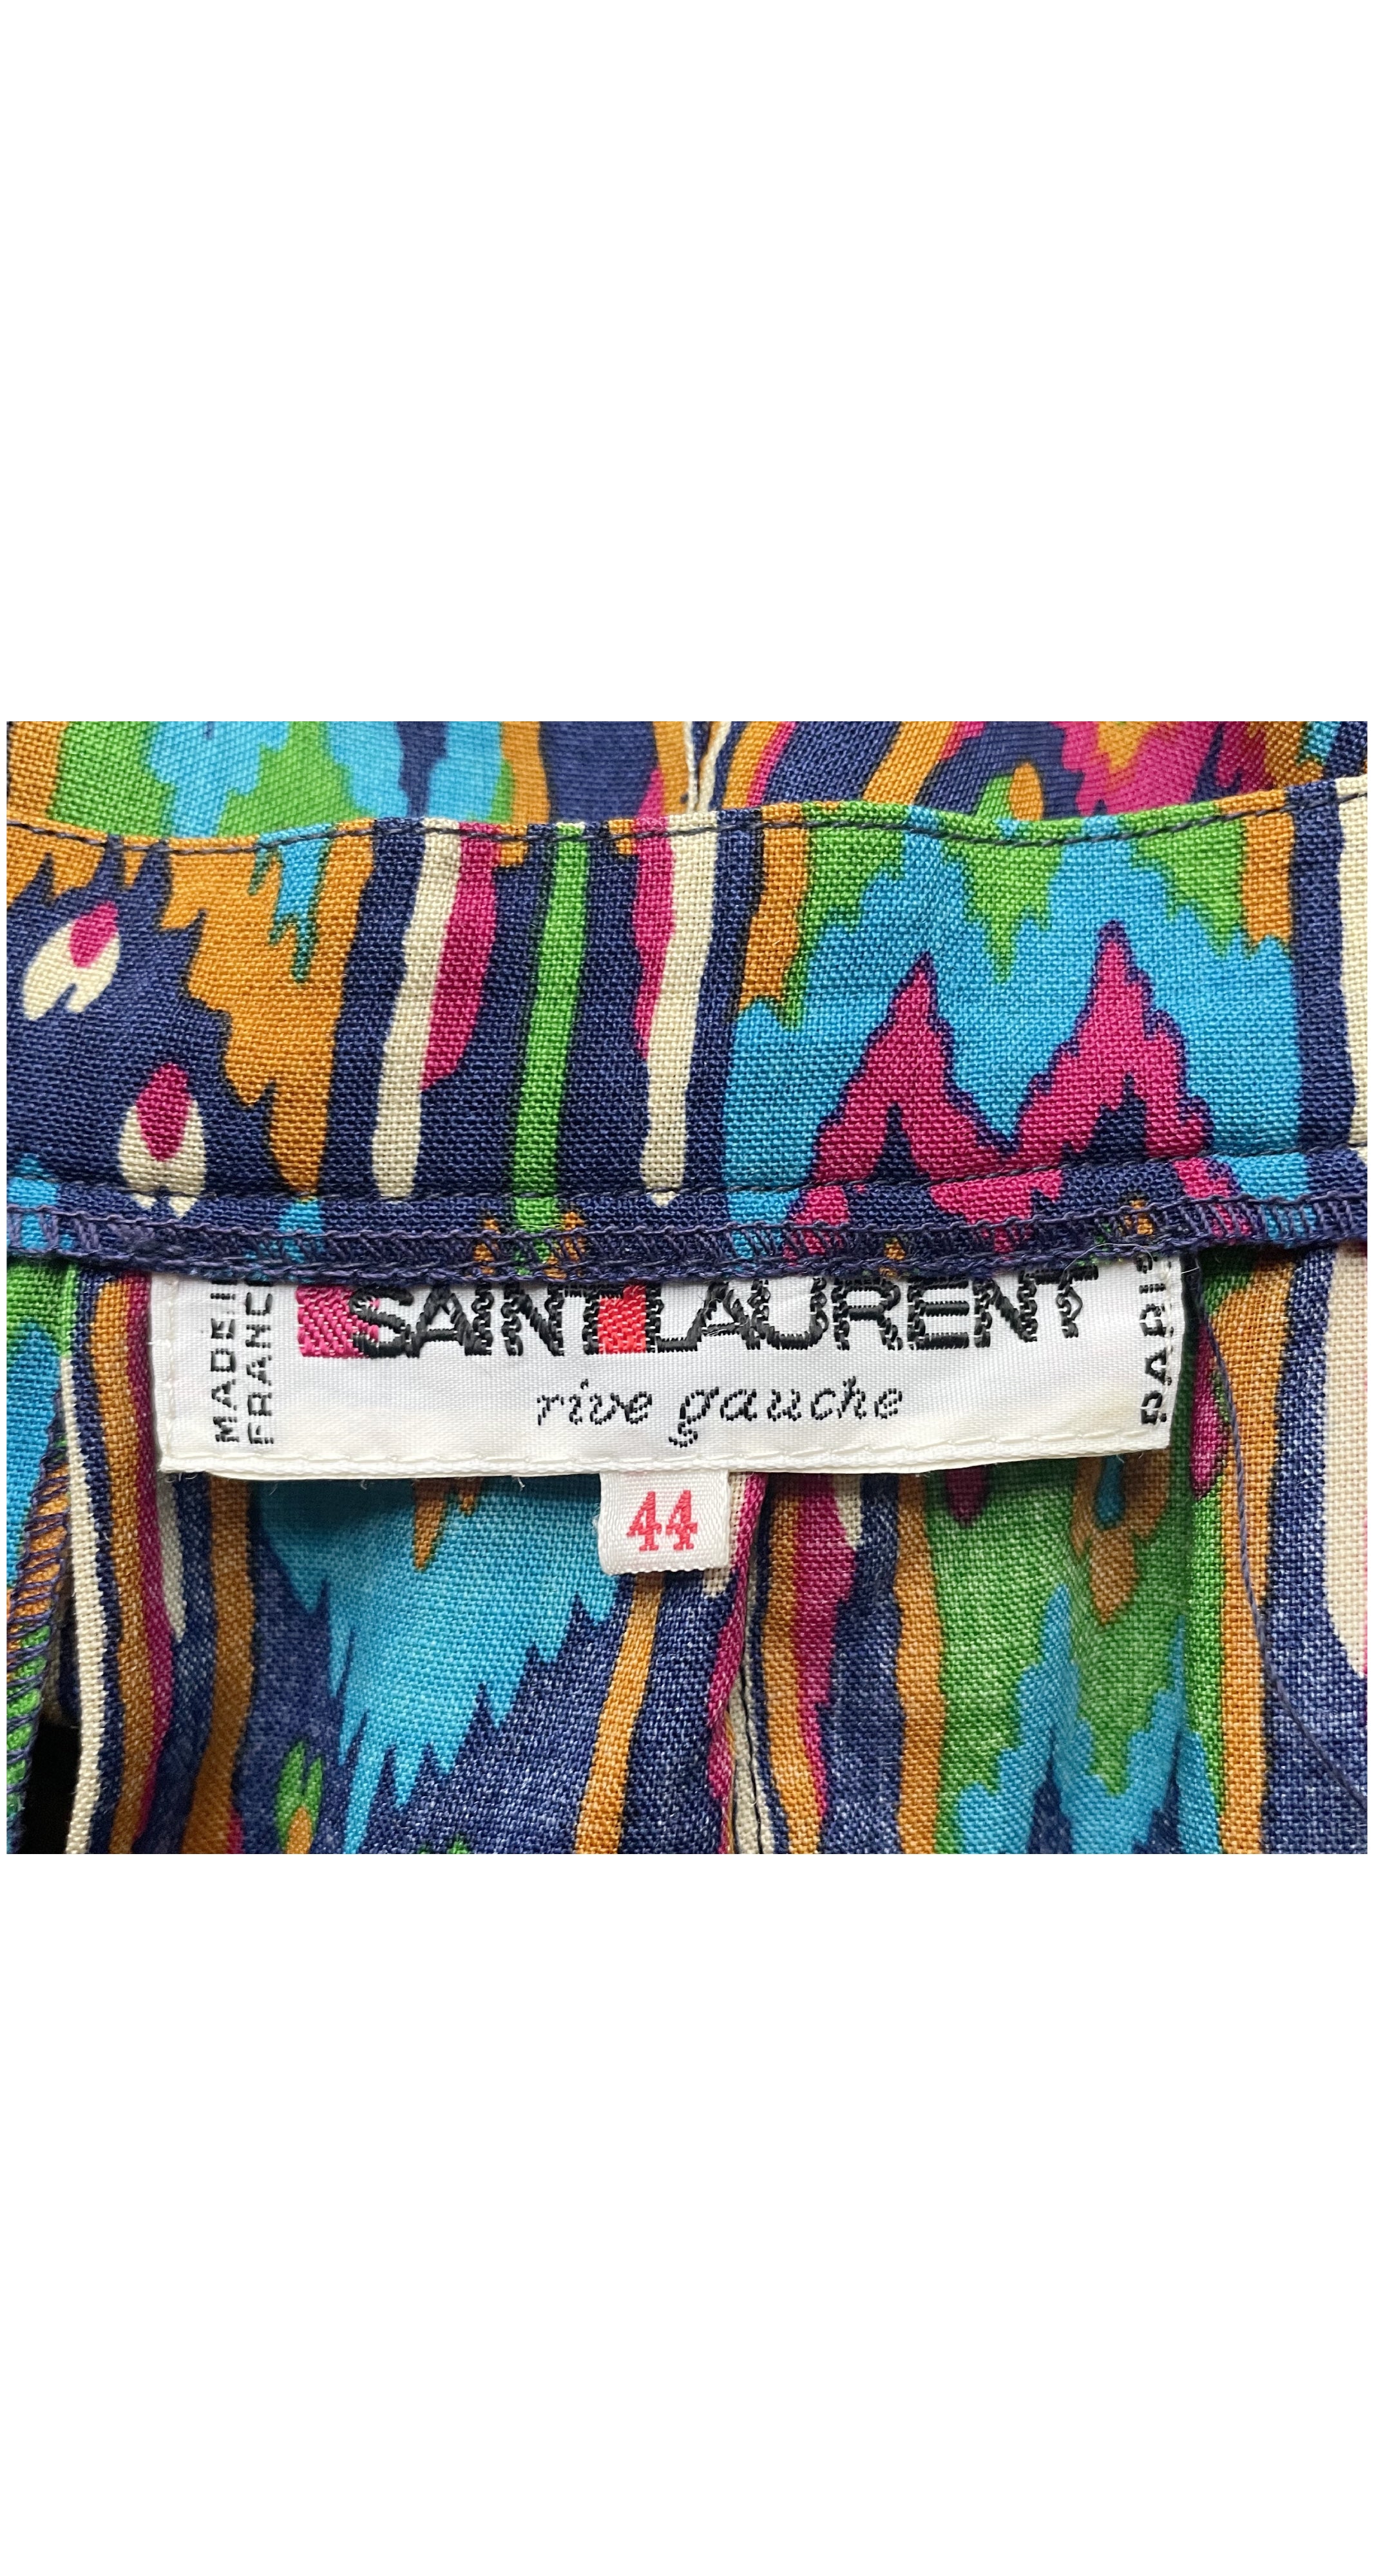 1980 F/W Runway Ikat Print Wool Challis Pleated Skirt